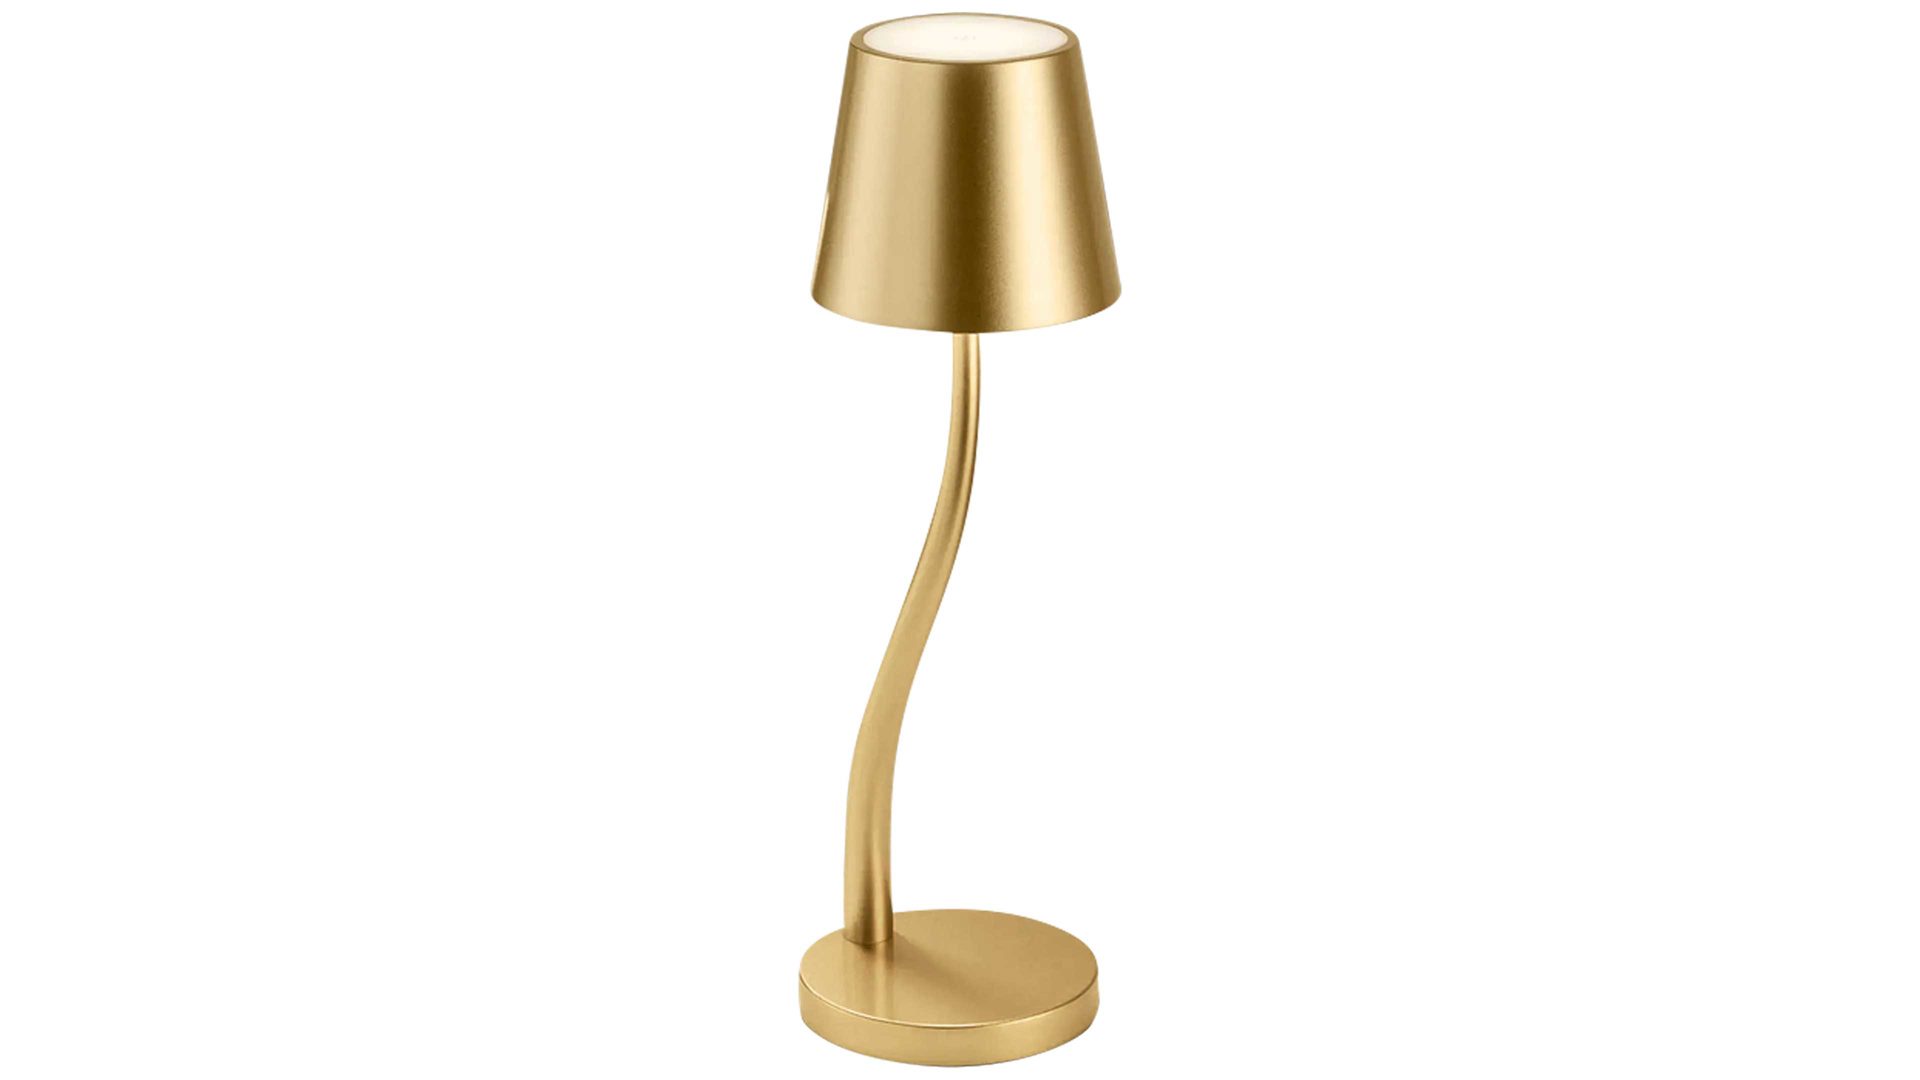 Tischleuchte Fabas luce s.p.a. aus Metall in Gold FABAS LUCE Akku Leuchten Serie Judy goldfarbenes Metall - Höhe ca. 37 cm